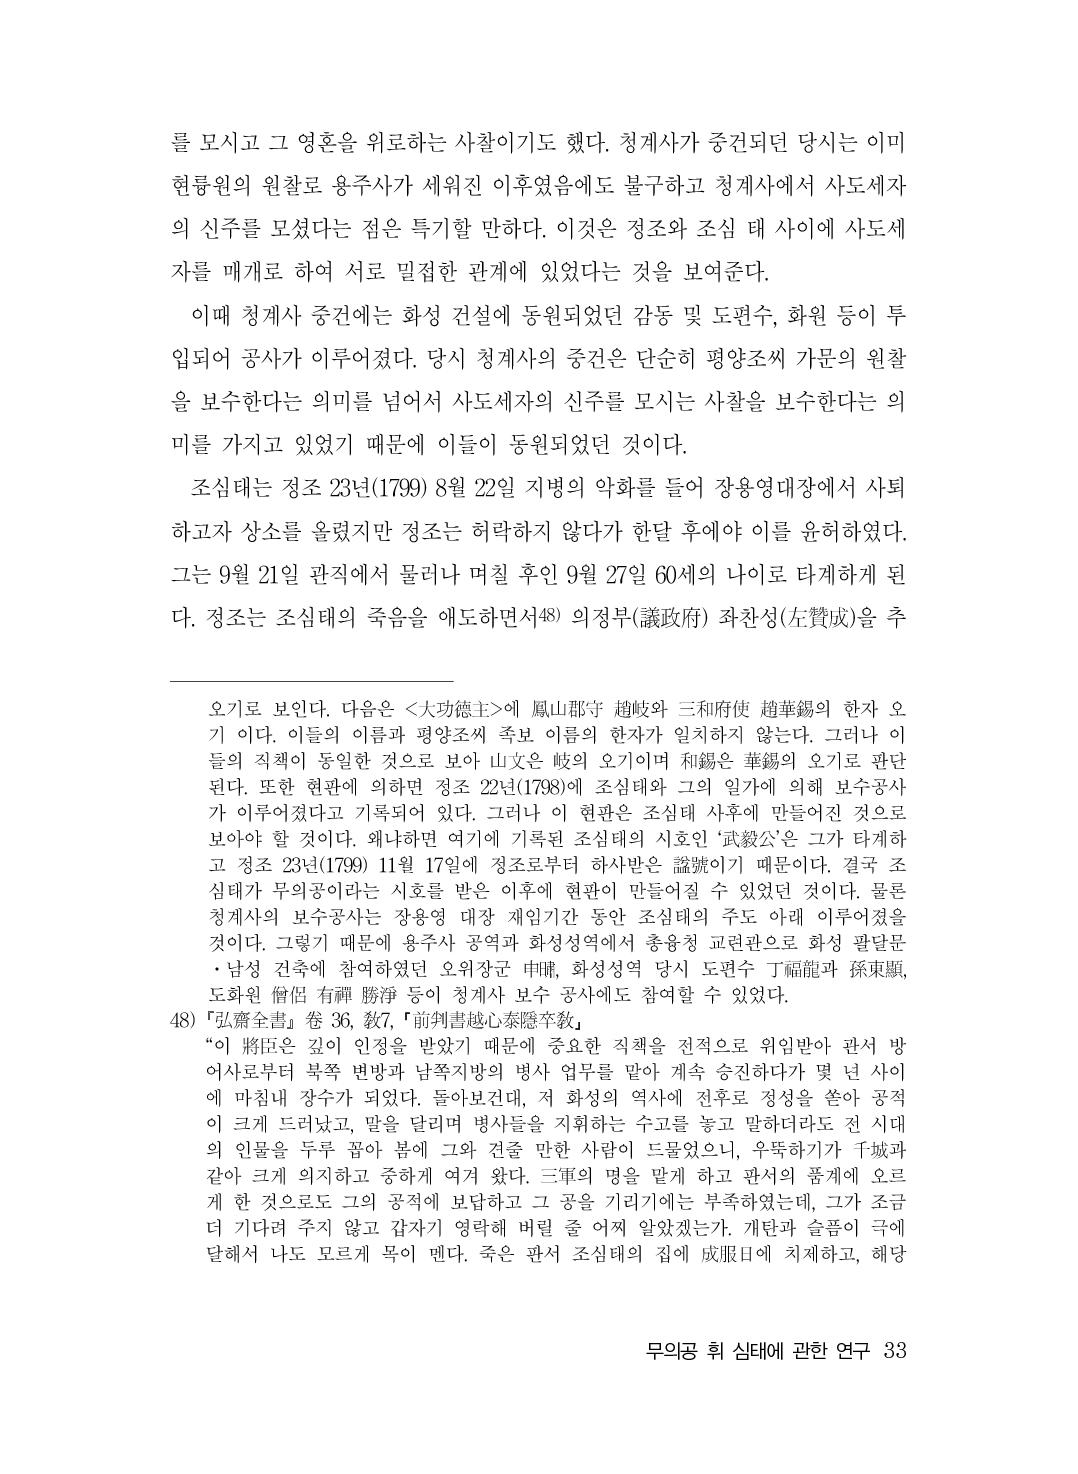 (전체) 송산종보(27호)(최종)_34.jpg